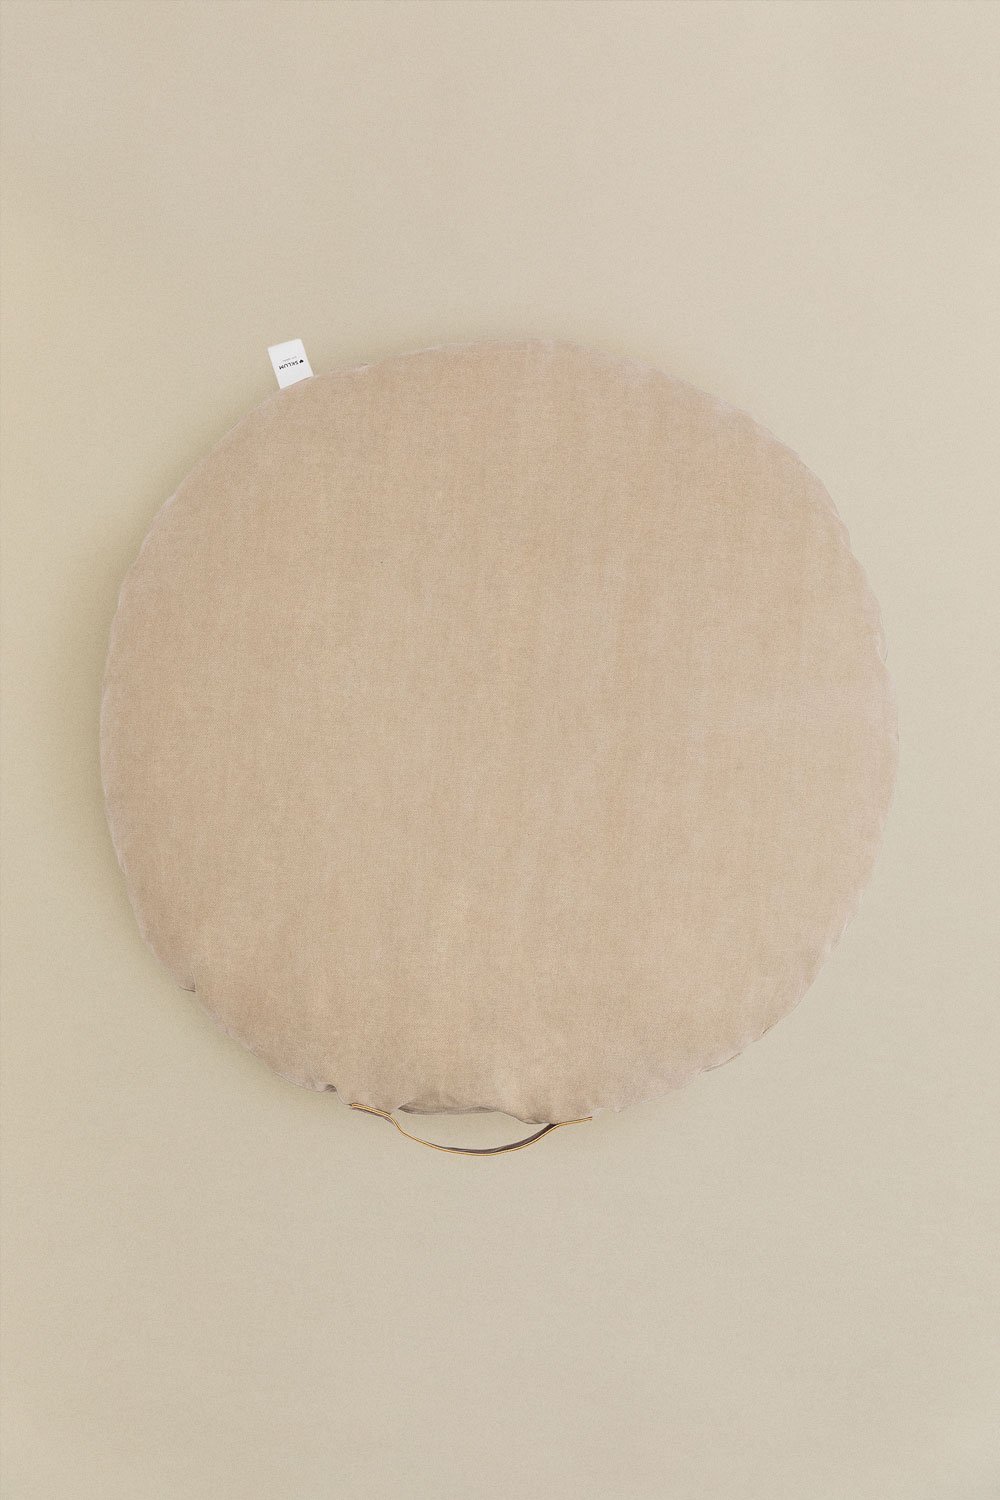 Cuscino da pavimento rotondo in cotone Suir, immagine della galleria 1